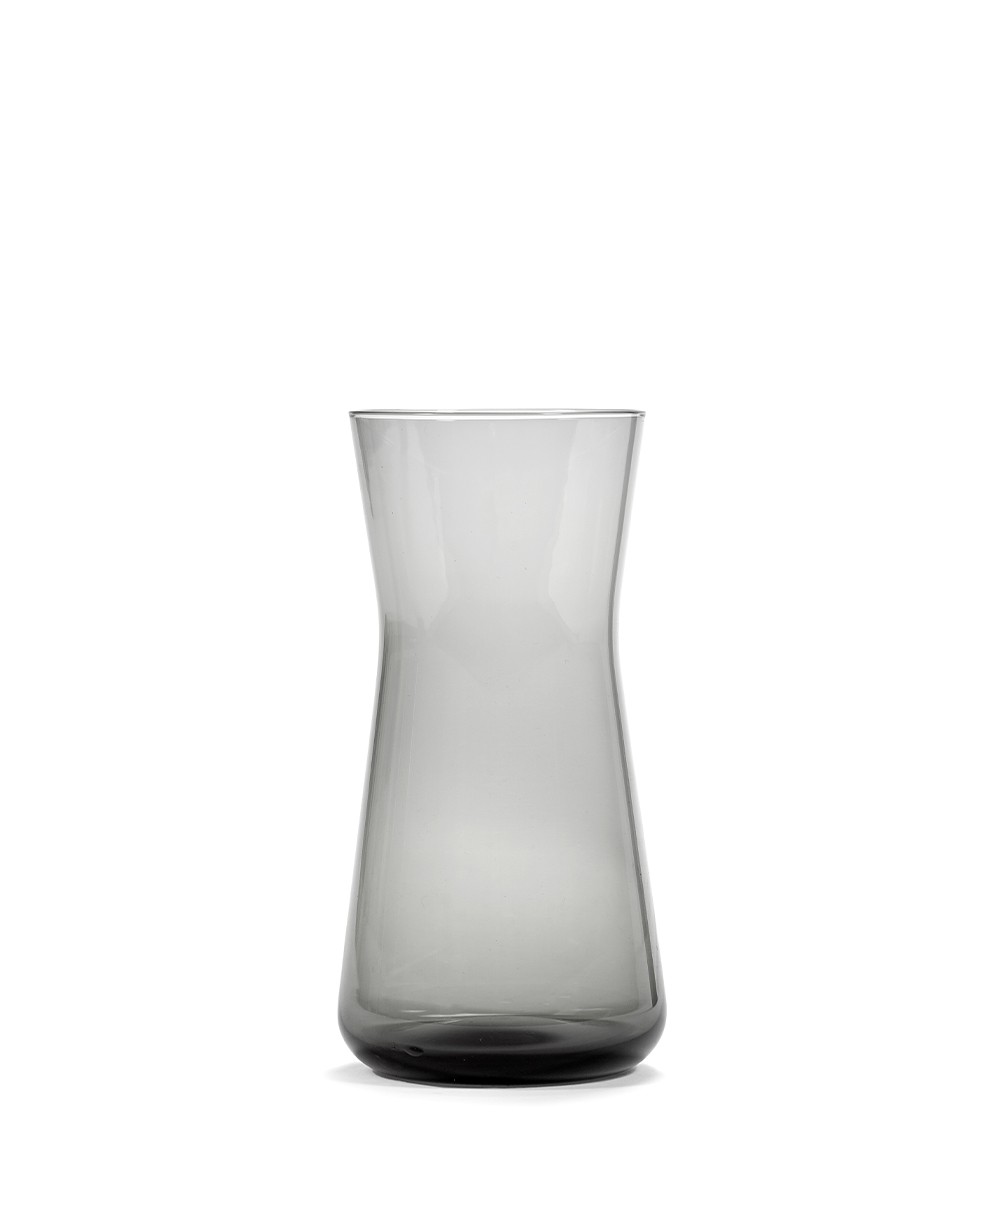 Die Karaffe CENA aus Glas in smoky grey von Serax aus der Kollektion von Vincent Van Duysen im RAUM concept store